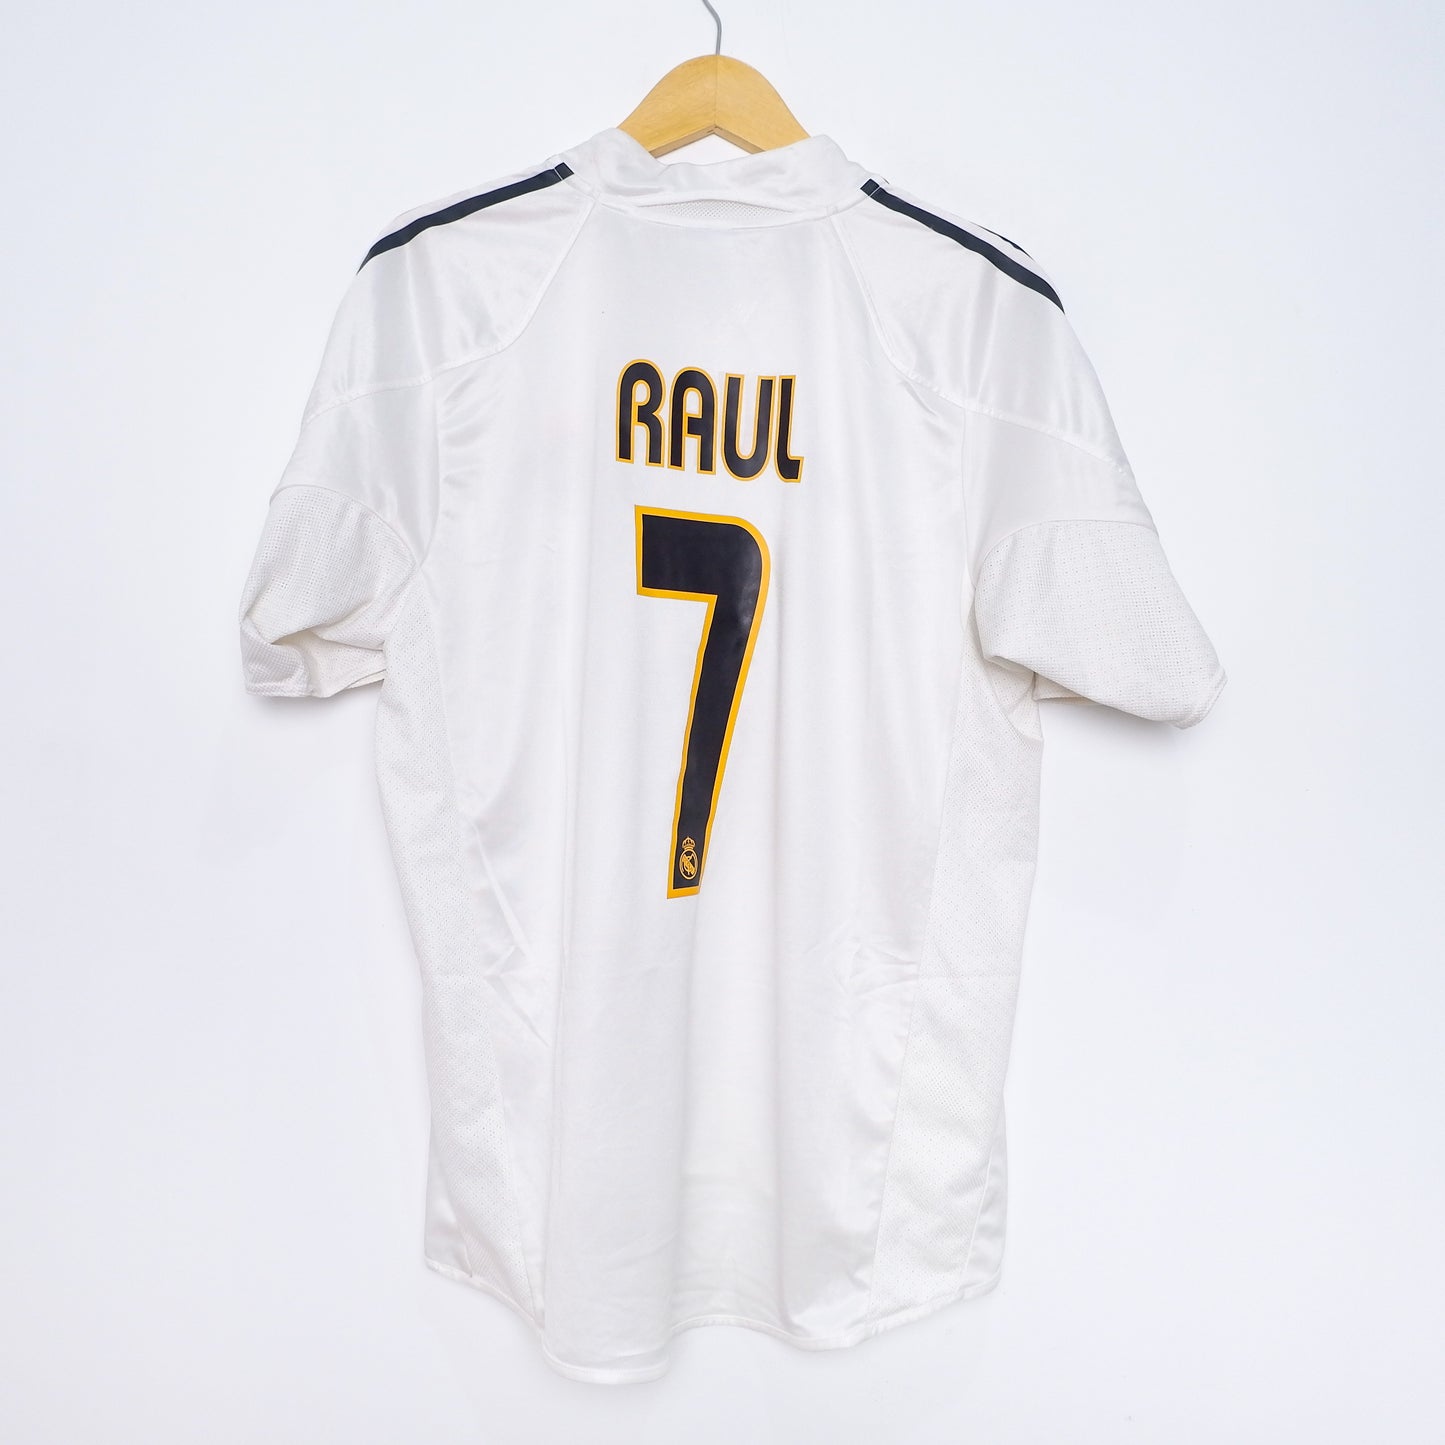 Authentic Real Madrid 2004/05 Home Jersey - Raúl González #7 Size M